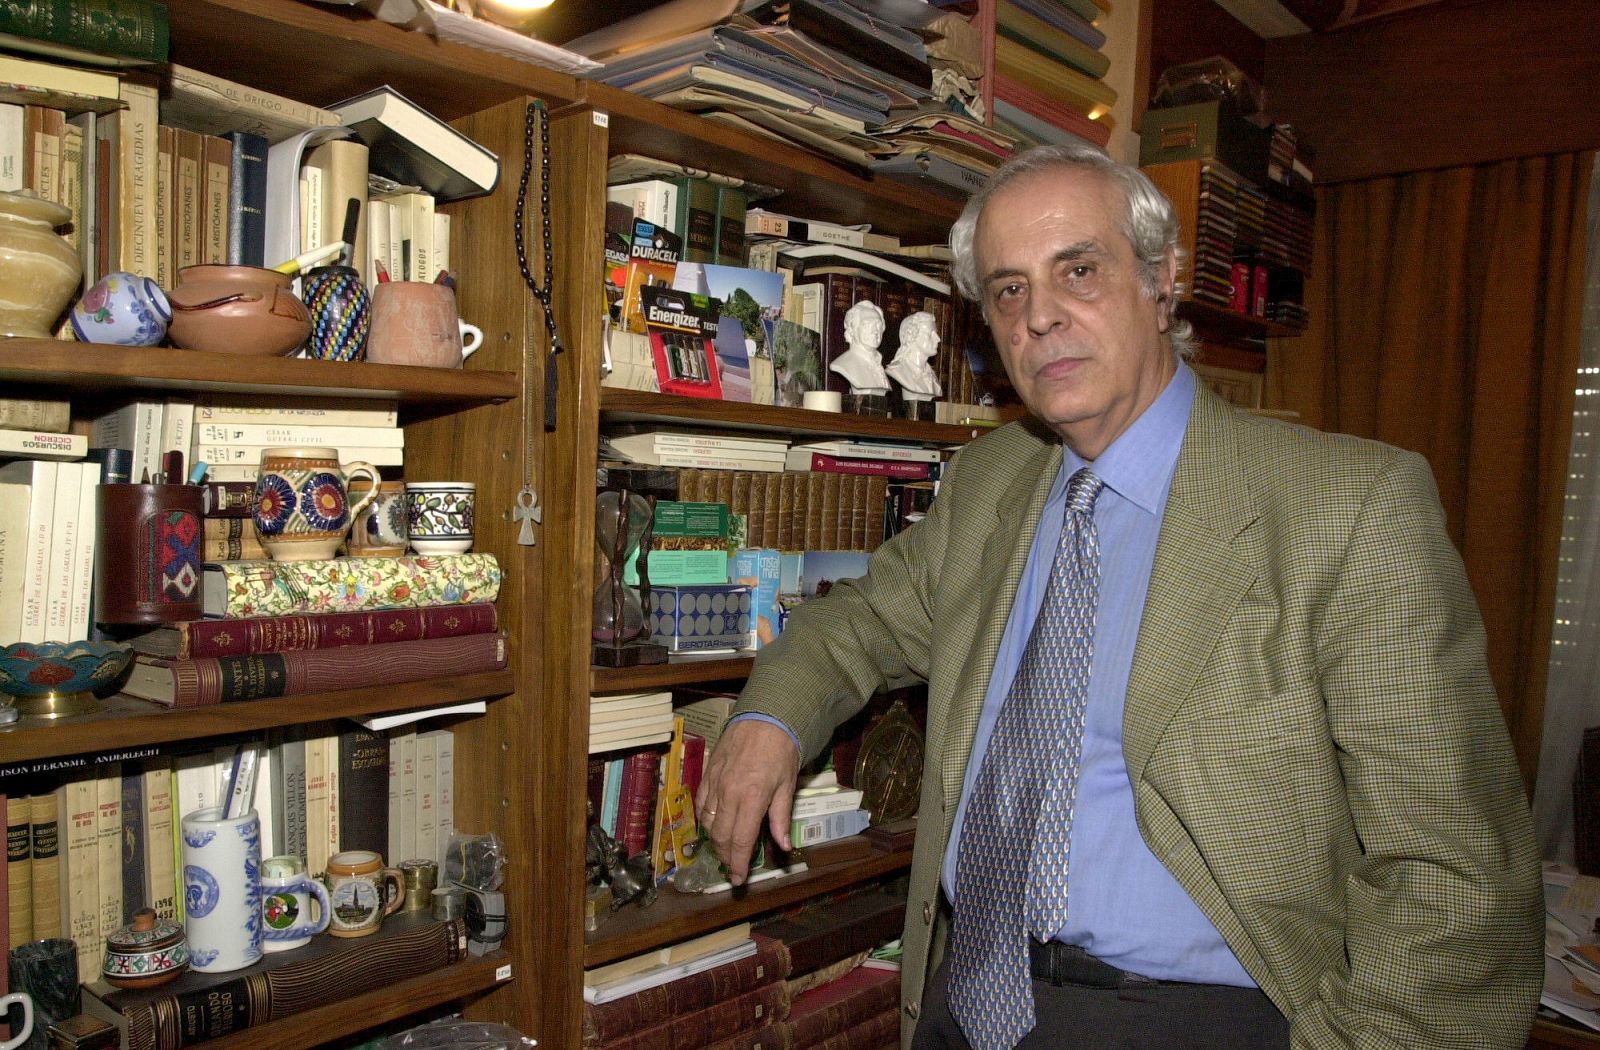 Muere el dramaturgo Domingo Miras, Premio Nacional de Literatura Dramática, que posa junto a una estantería llena de libros detrás de él